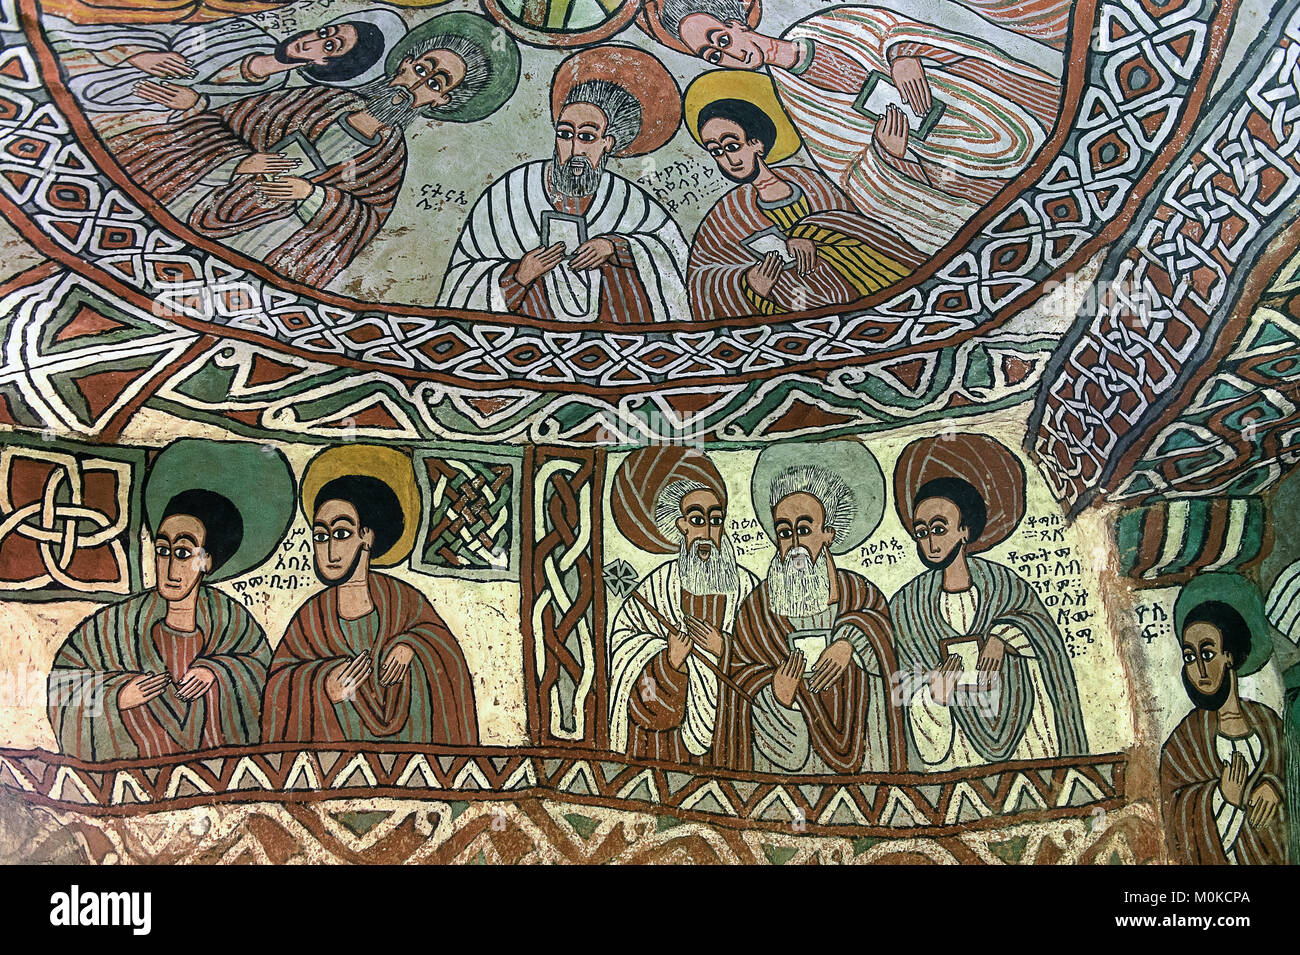 Coupole avec Apostels, fresque dans l'église rupestres orthodoxe Abuna Yemata, Gheralta, région du Tigré, en Ethiopie Banque D'Images